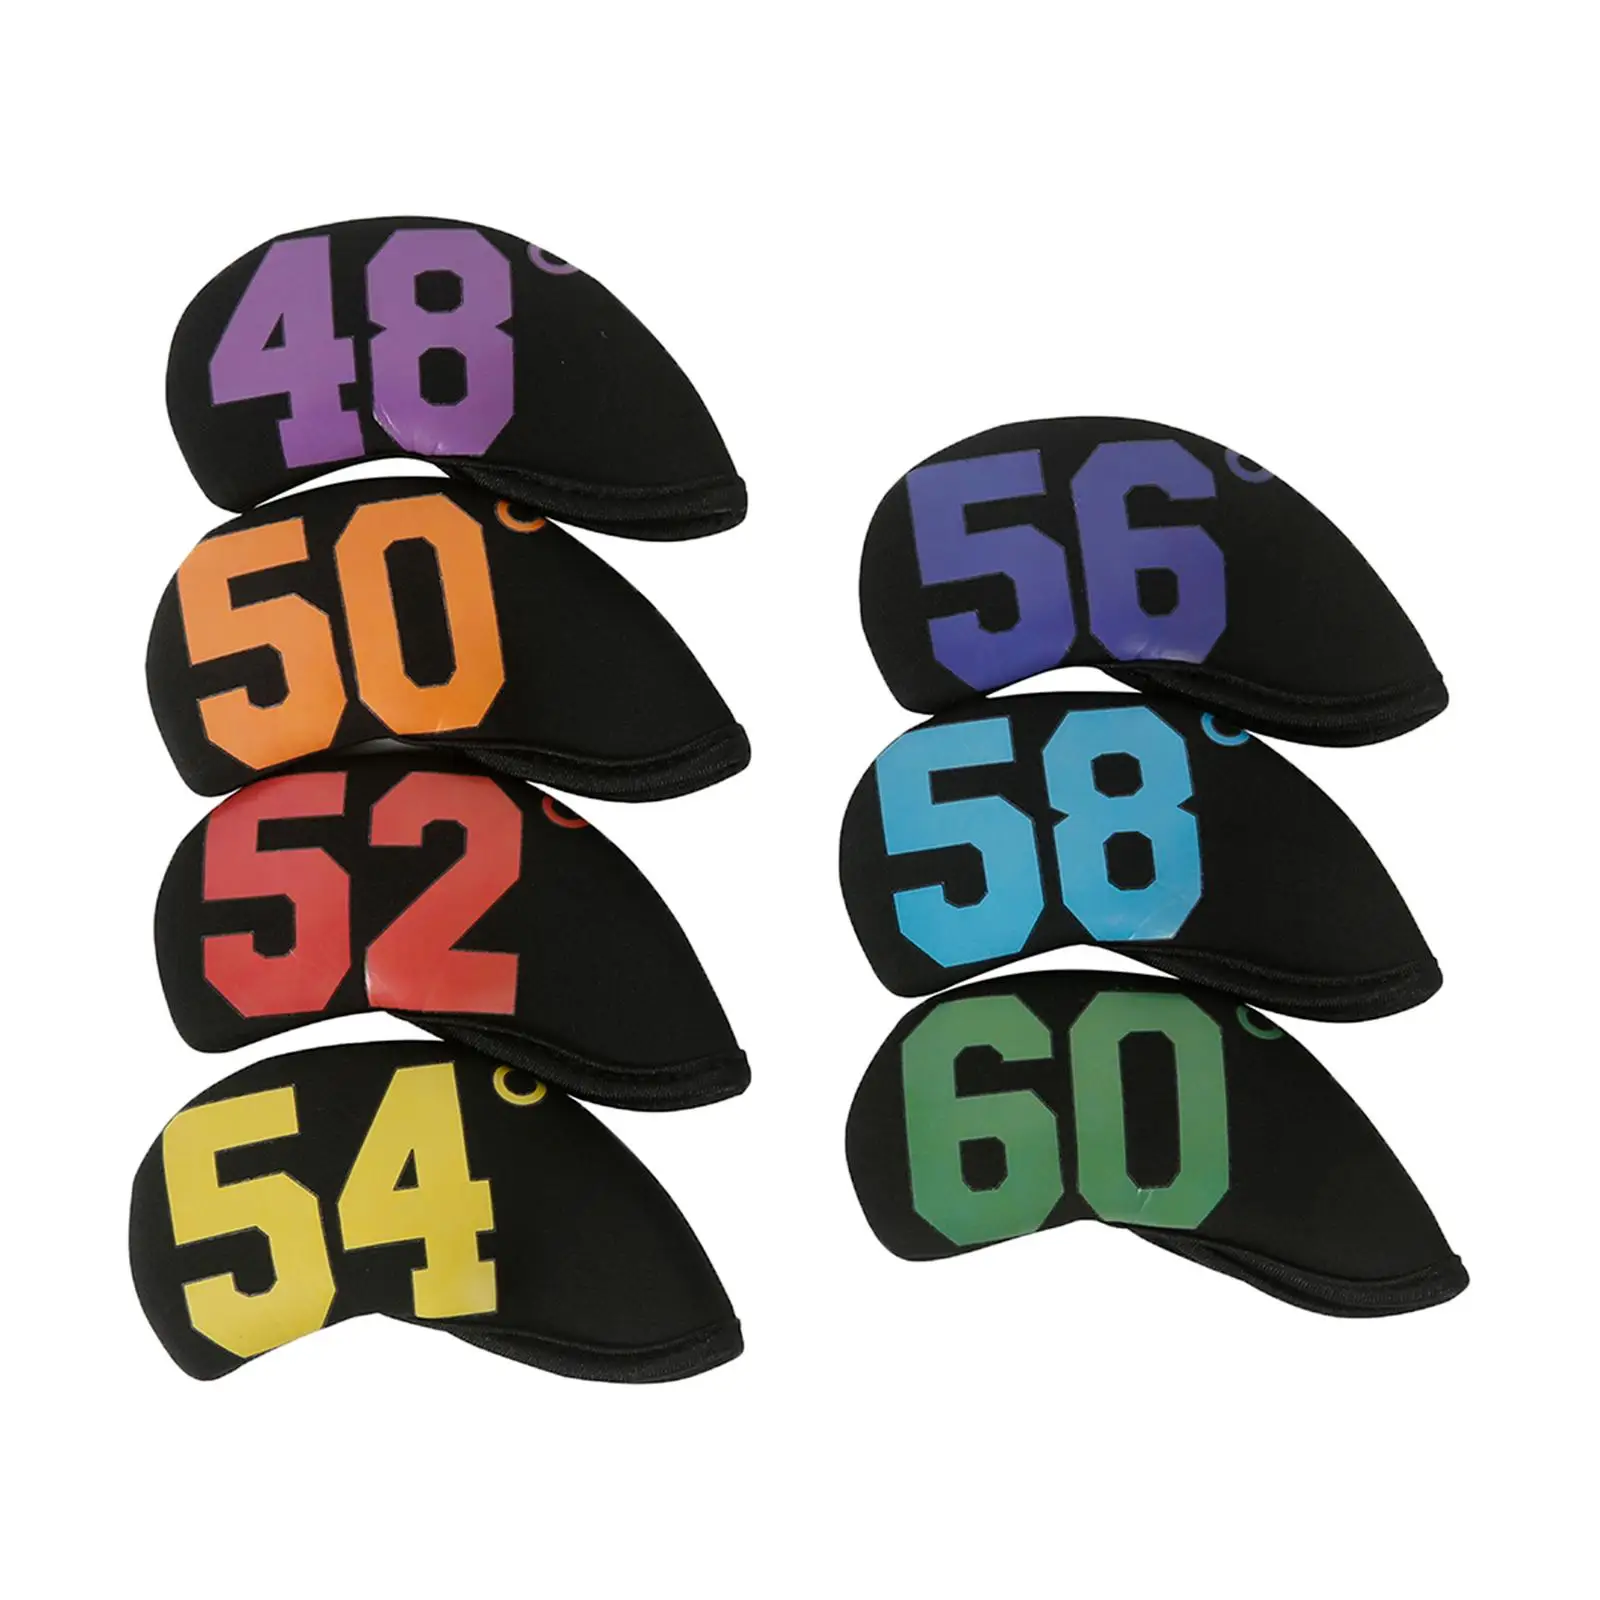 

7x набор железных головных уборов для гольфа головные уборы для гольф-клубов с градусами 48 °, 50 °, 52 °, 54 °, 56 °, 58 °, 60 ° защитный неопрен для мужчин и женщин